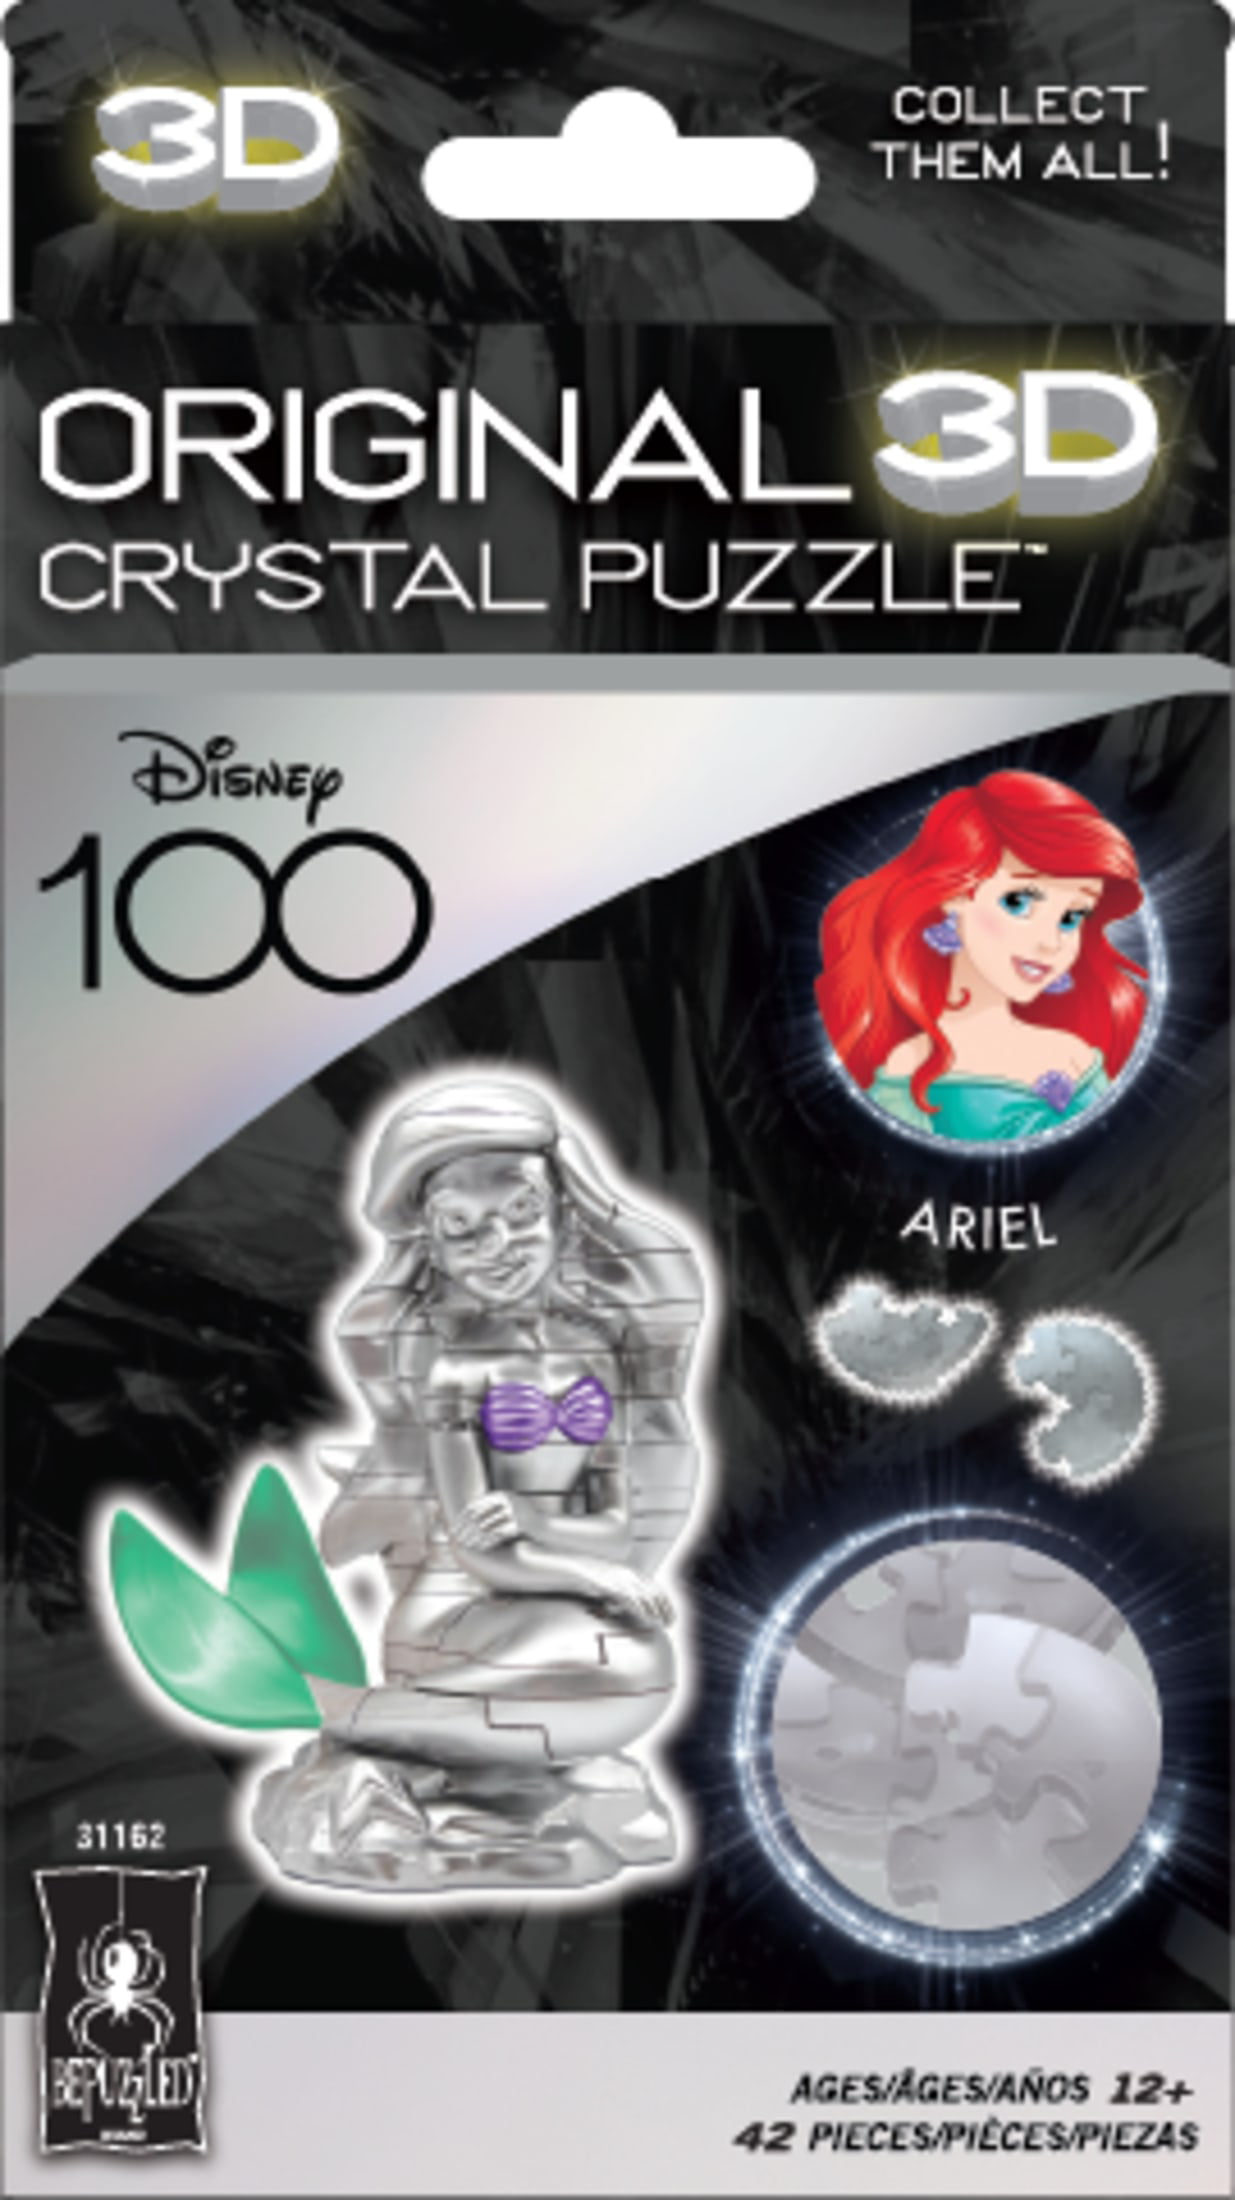 3D Crystal Puzzle - Disney 100 Platinum Edition - Ariel: 42 Pcs